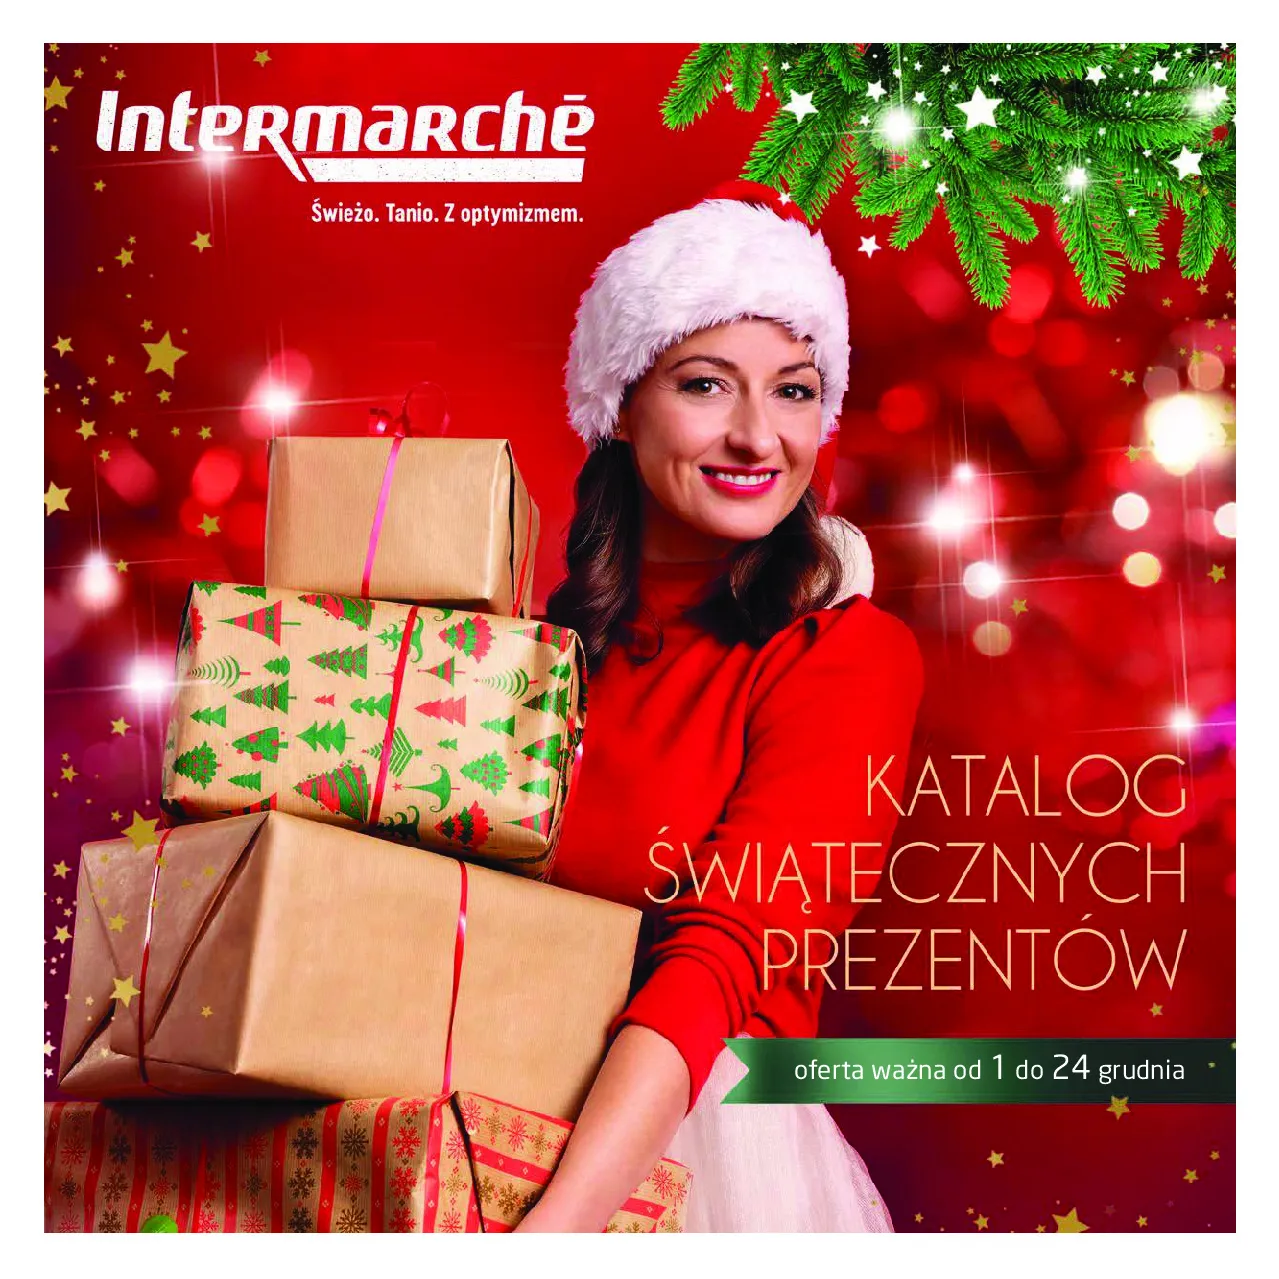 Gazetka promocyjna Intermarche - Święta - ważna 01.12 do 24.12.2020 - strona 1